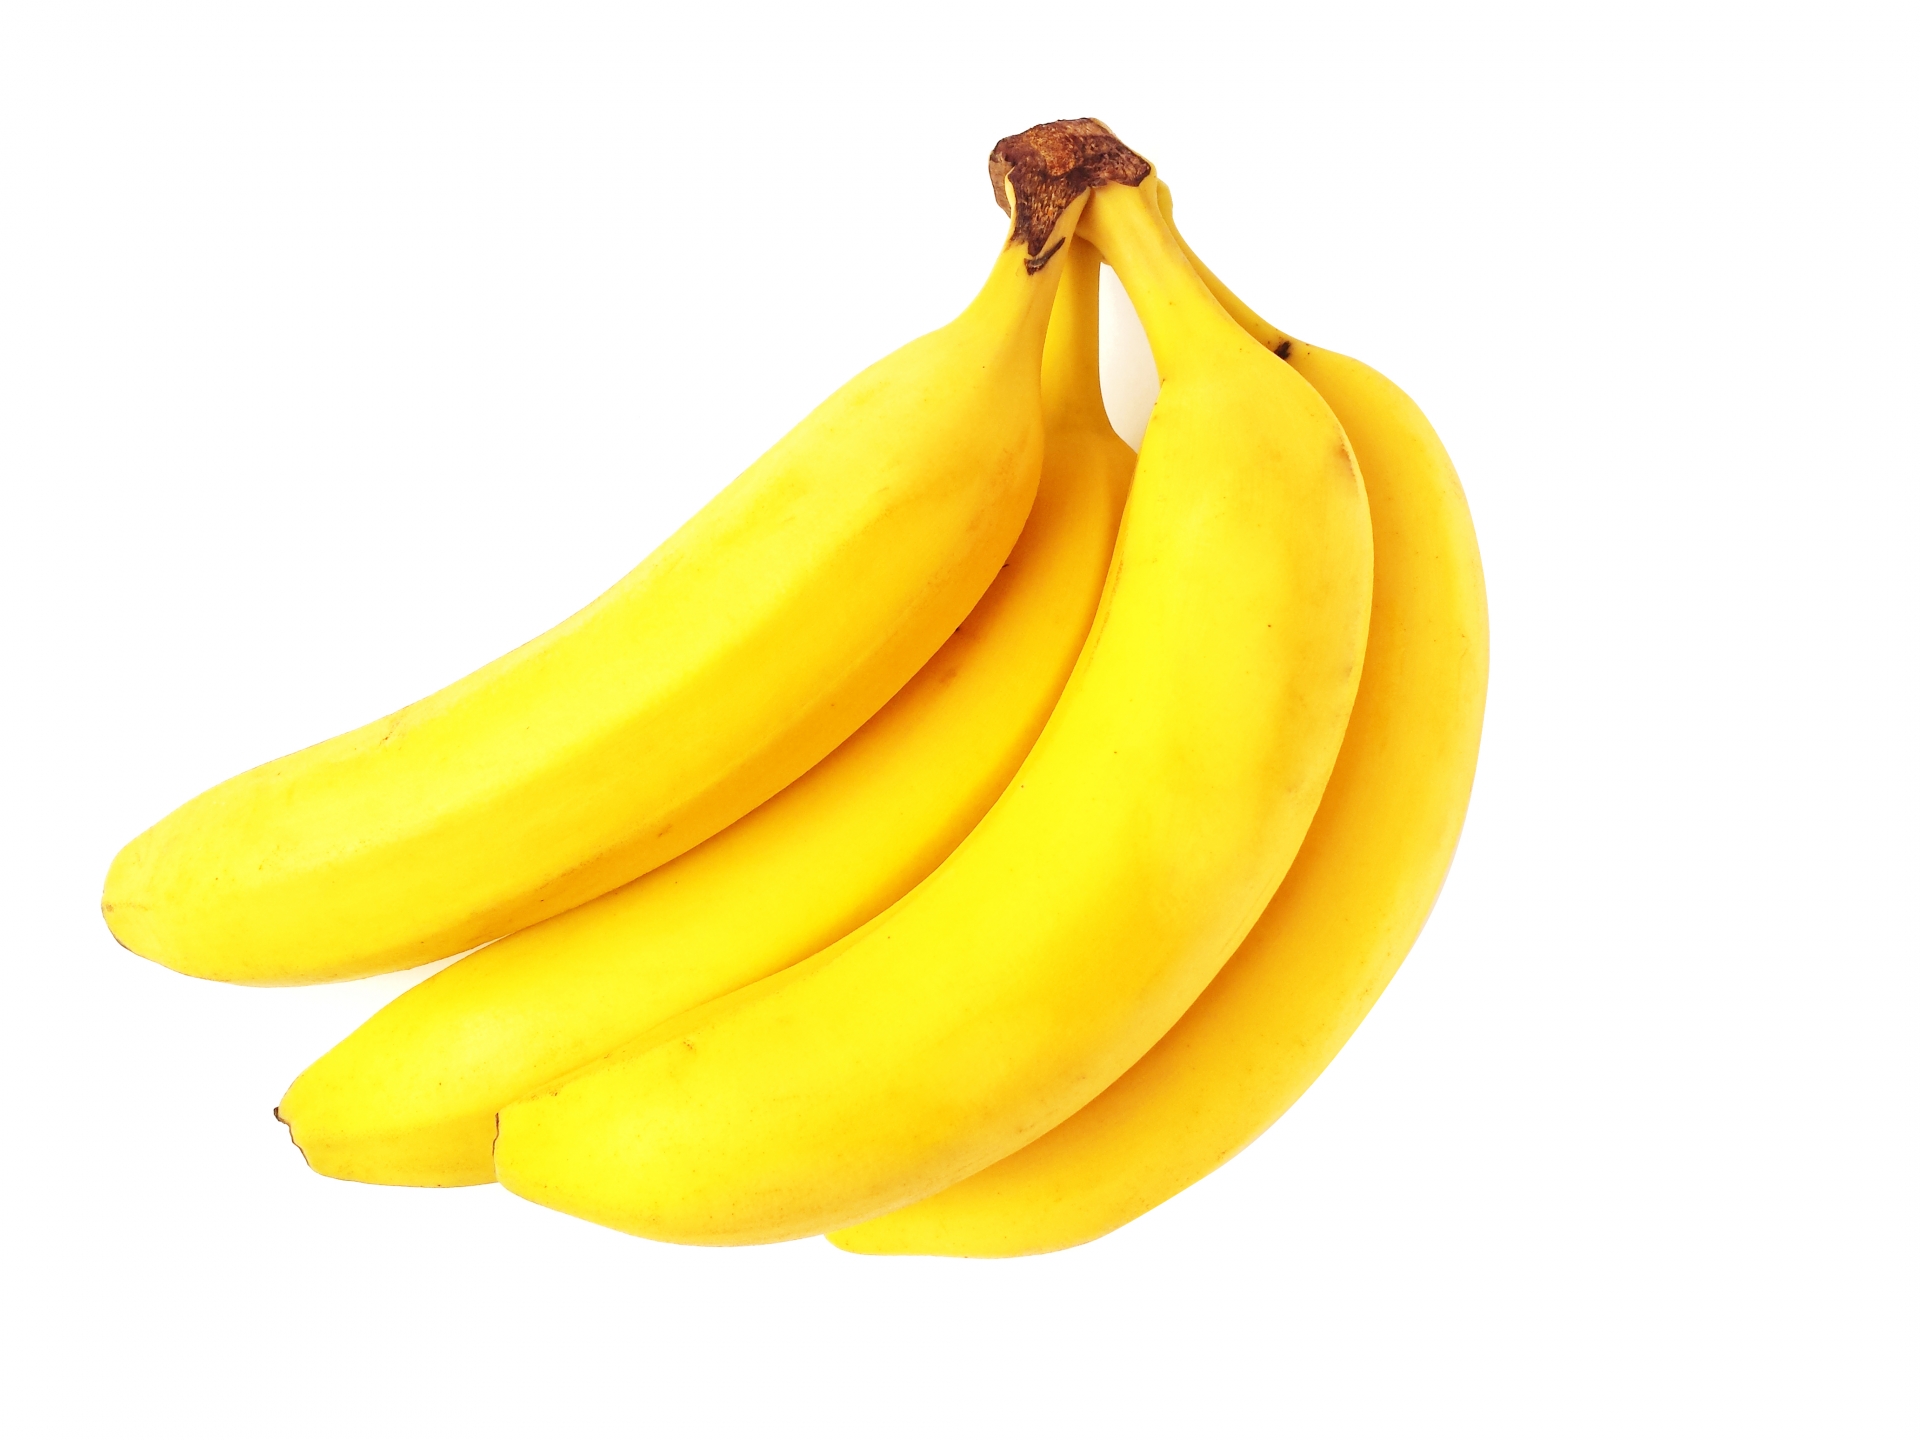 バナナをおやつや離乳食として与える時の注意点とポイント